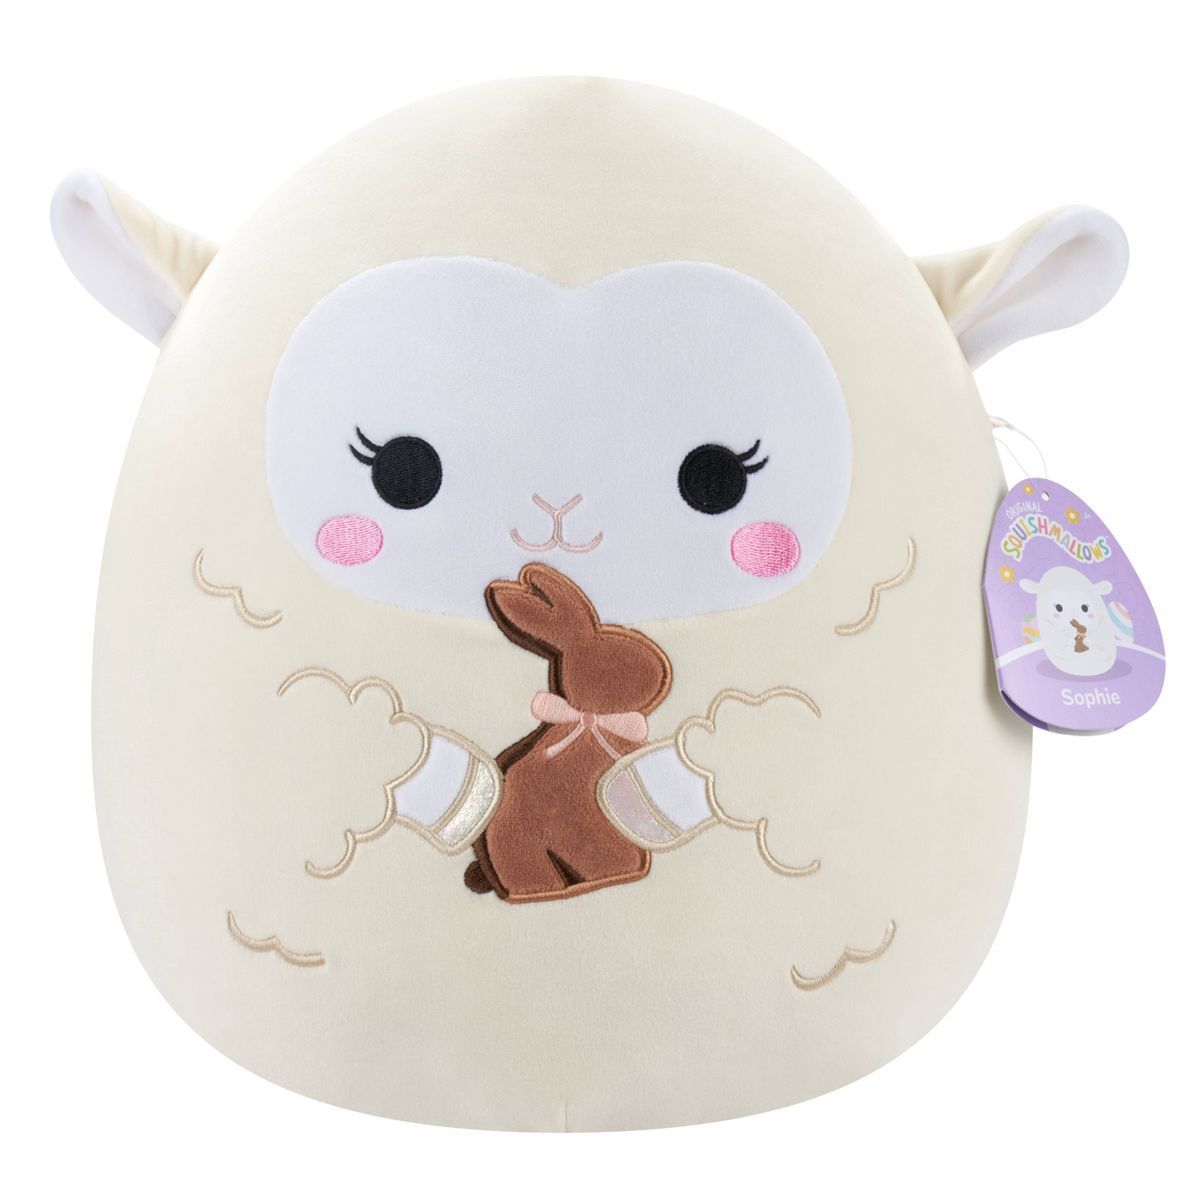 Squishmallows 12" Sophie Cream Lamb with Chocolate Bunny Medium Plush | Target